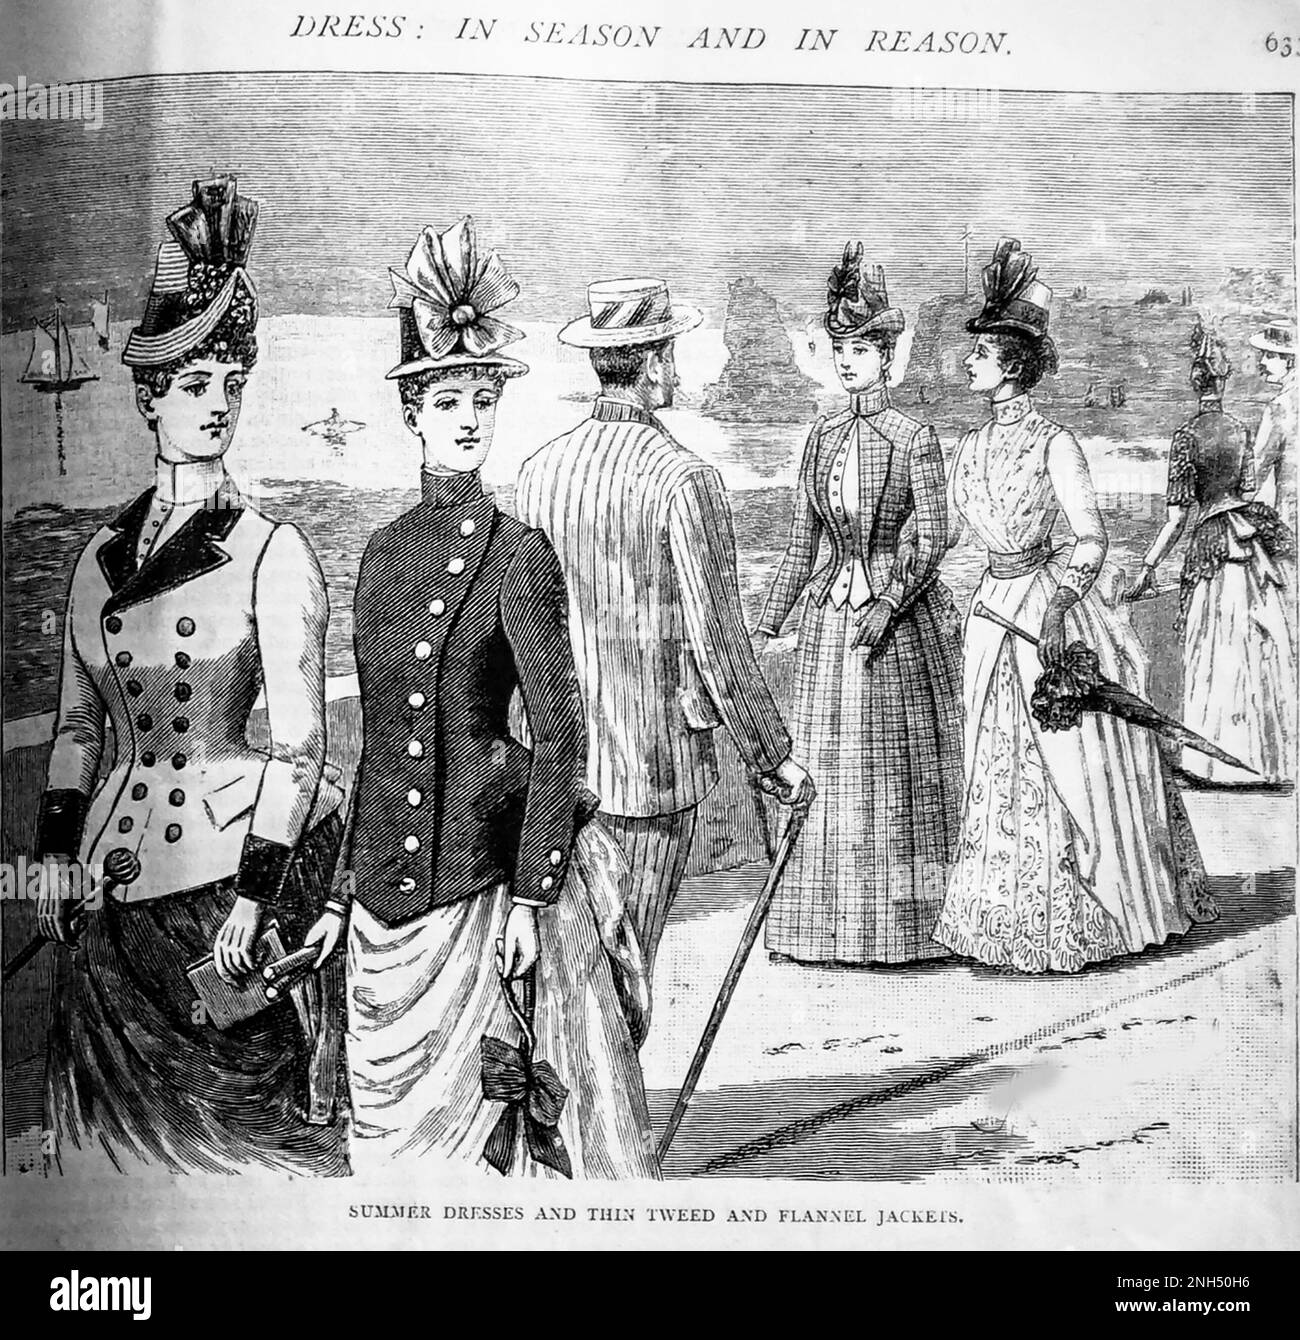 Un boceto del siglo 19th de jóvenes vestidos de moda paseando titulado Vestidos de verano y chaquetas de tweed y franela delgadas de The Girls Own Weekly de 1888. Foto de stock